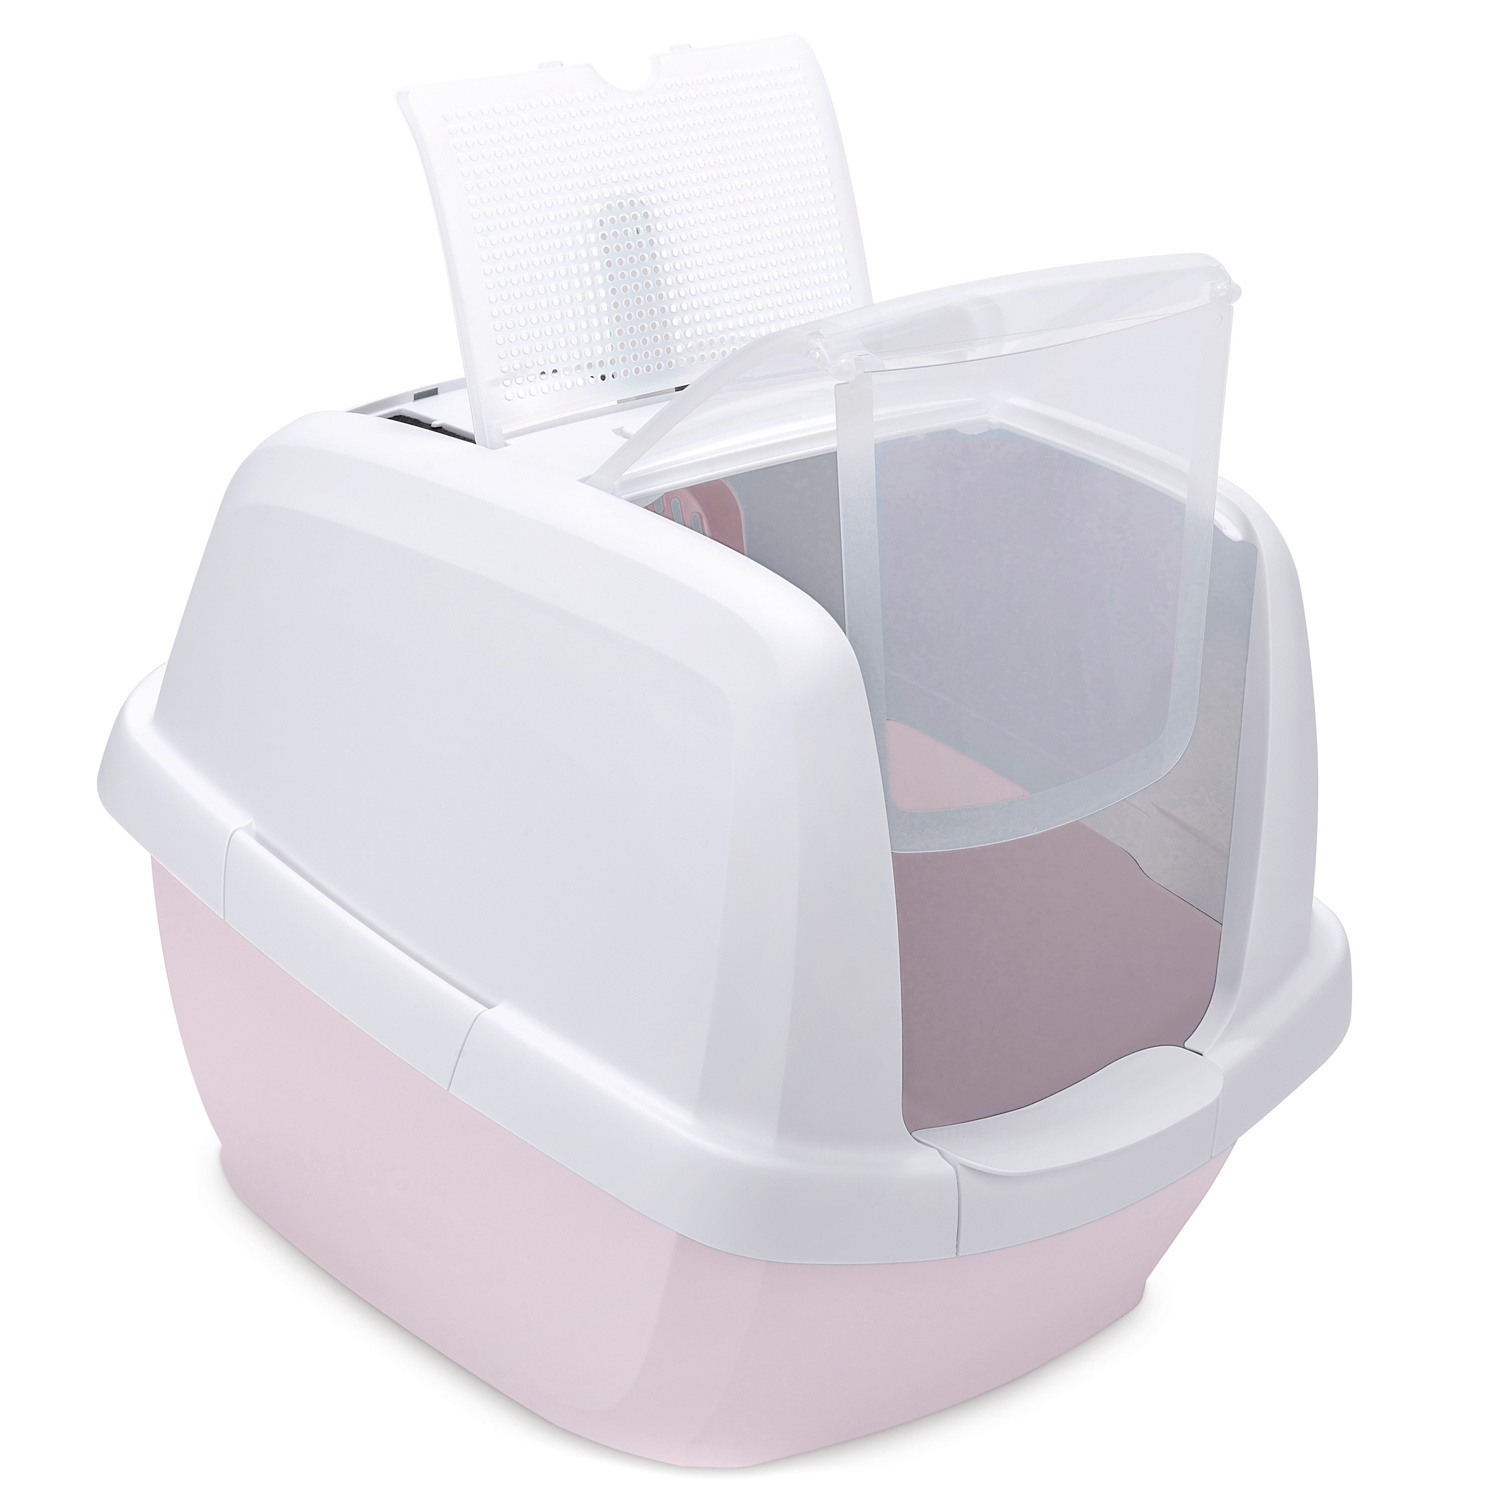 IMAC IMAC био-туалет для кошек , белый/нежно-розовый (2,85 кг) биотуалет для кошек imac maddy 65х47 5х47 5h см белый нежно розовый